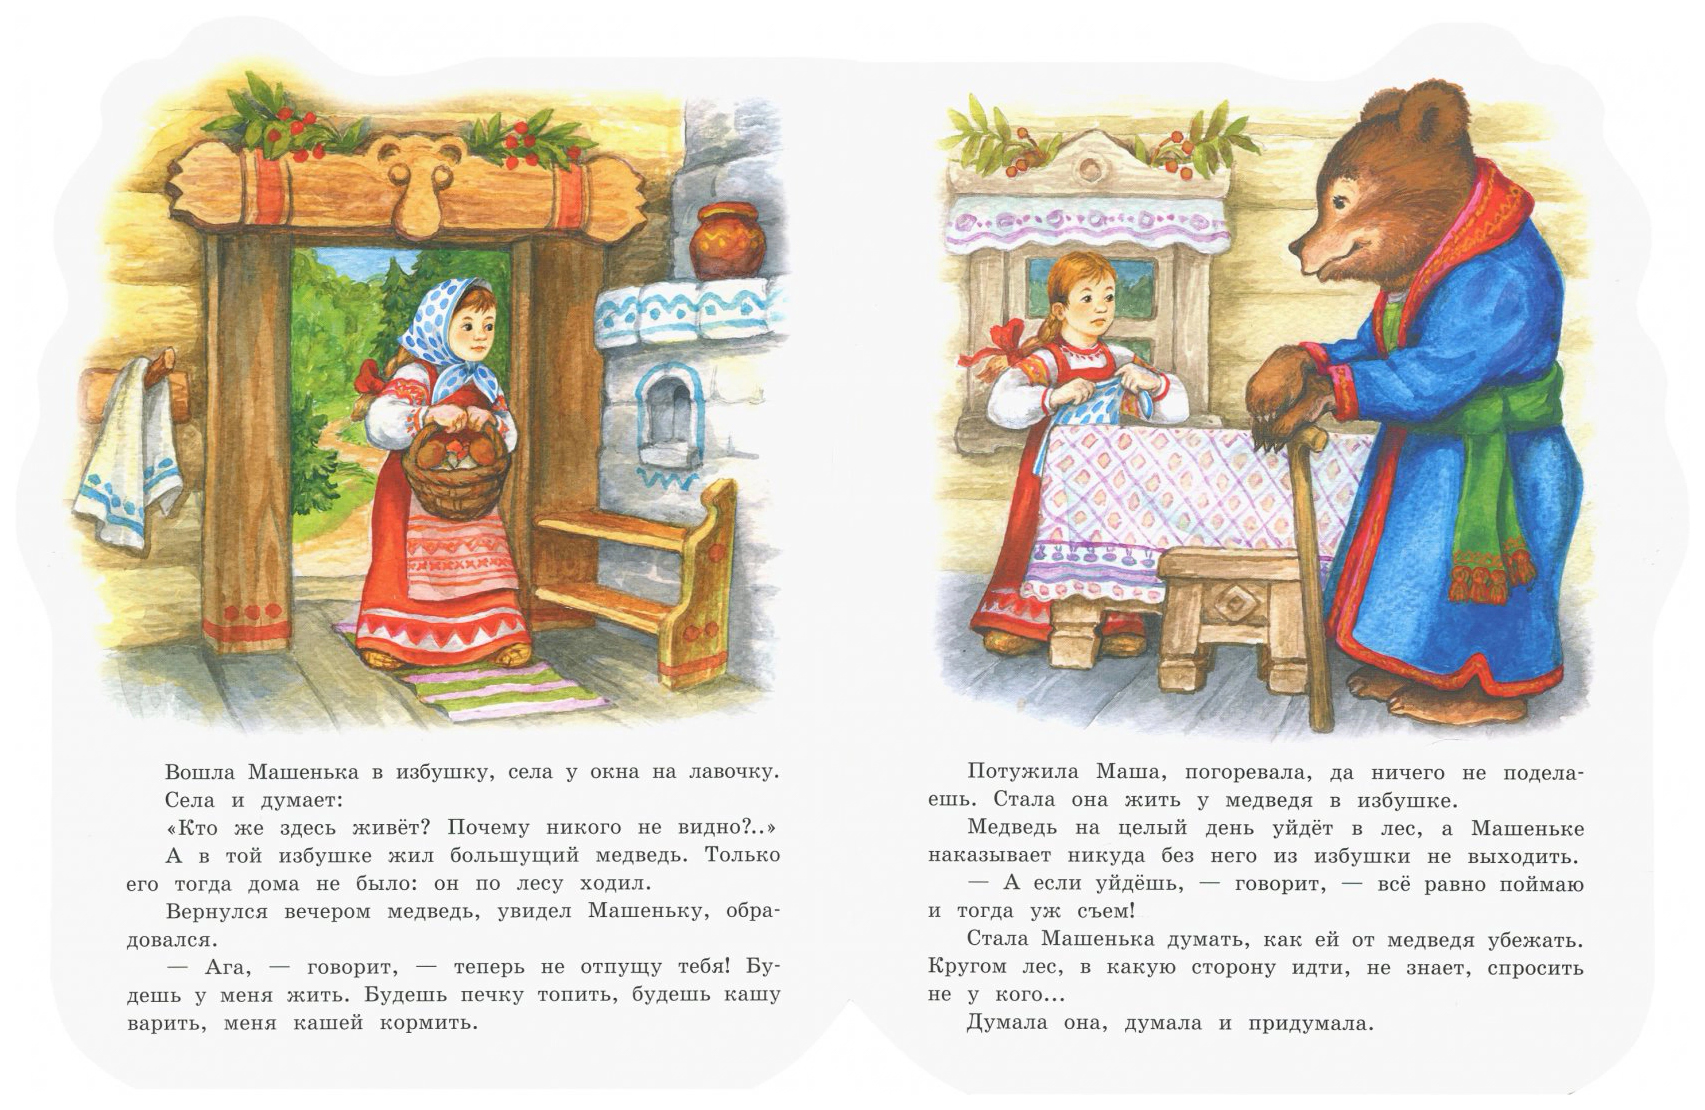 Девочка медведя читать. Машенька и медведь сказка книга. Иллюстрации к сказке Маша и медведь в обработке Булатова. Сказка Маша и медведь текст. Иллютрации к сказке«Маша и медведь»,.